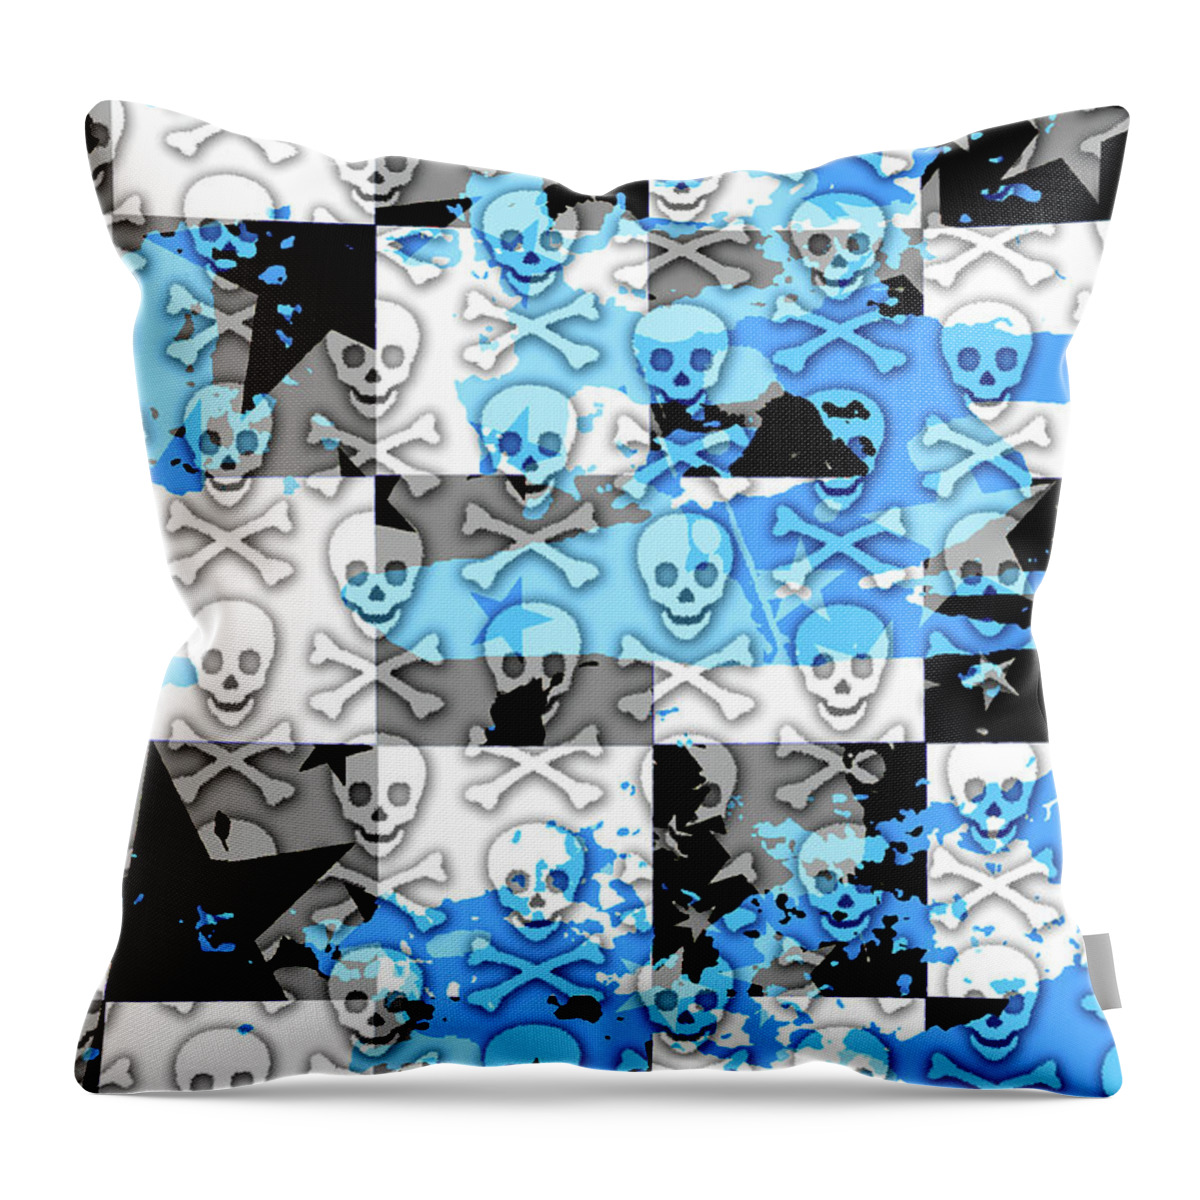 Skull Throw Pillow featuring the digital art Blue Checker Skull Splatter by Roseanne Jones